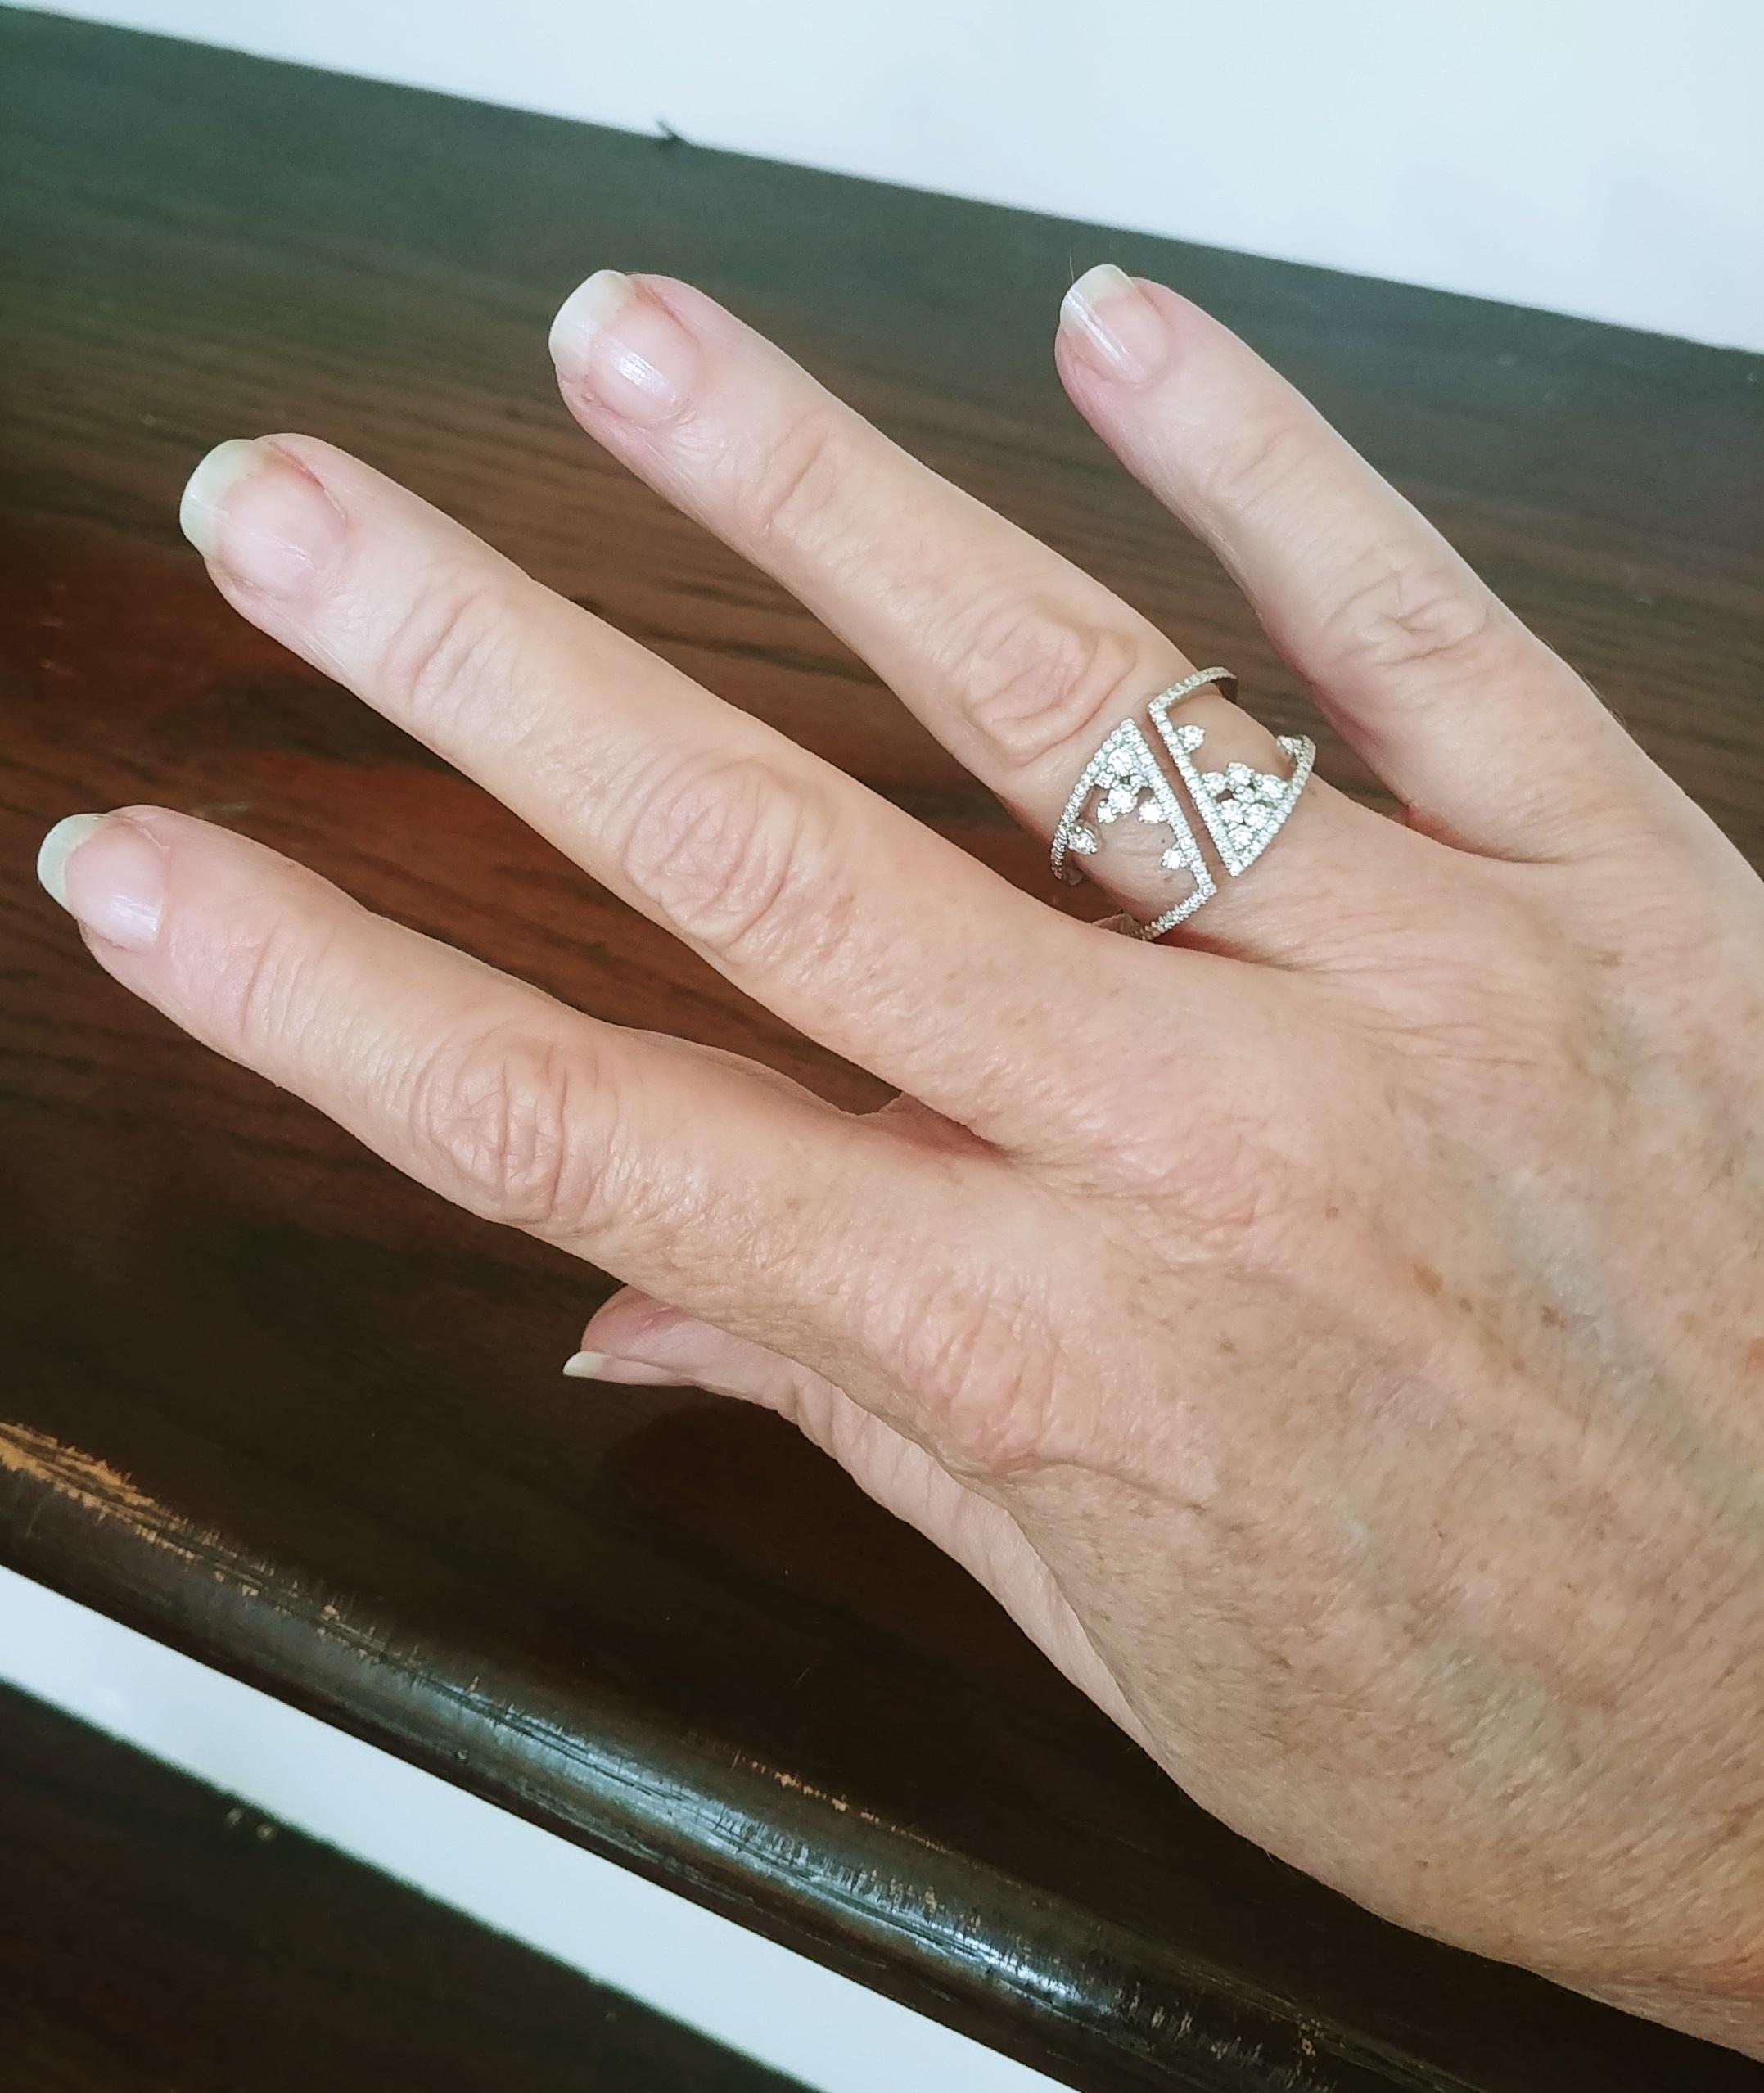 Ladies Fashion Diamond Scatter Style Ring 0,64ctw 14K Weißgold in Fingergröße 7,5 US. Das flexible Design ermöglicht eine gewisse Dehnung ohne Größenänderung. Das offene, aber dennoch breite Design schmeichelt der Hand. Runde Diamanten im